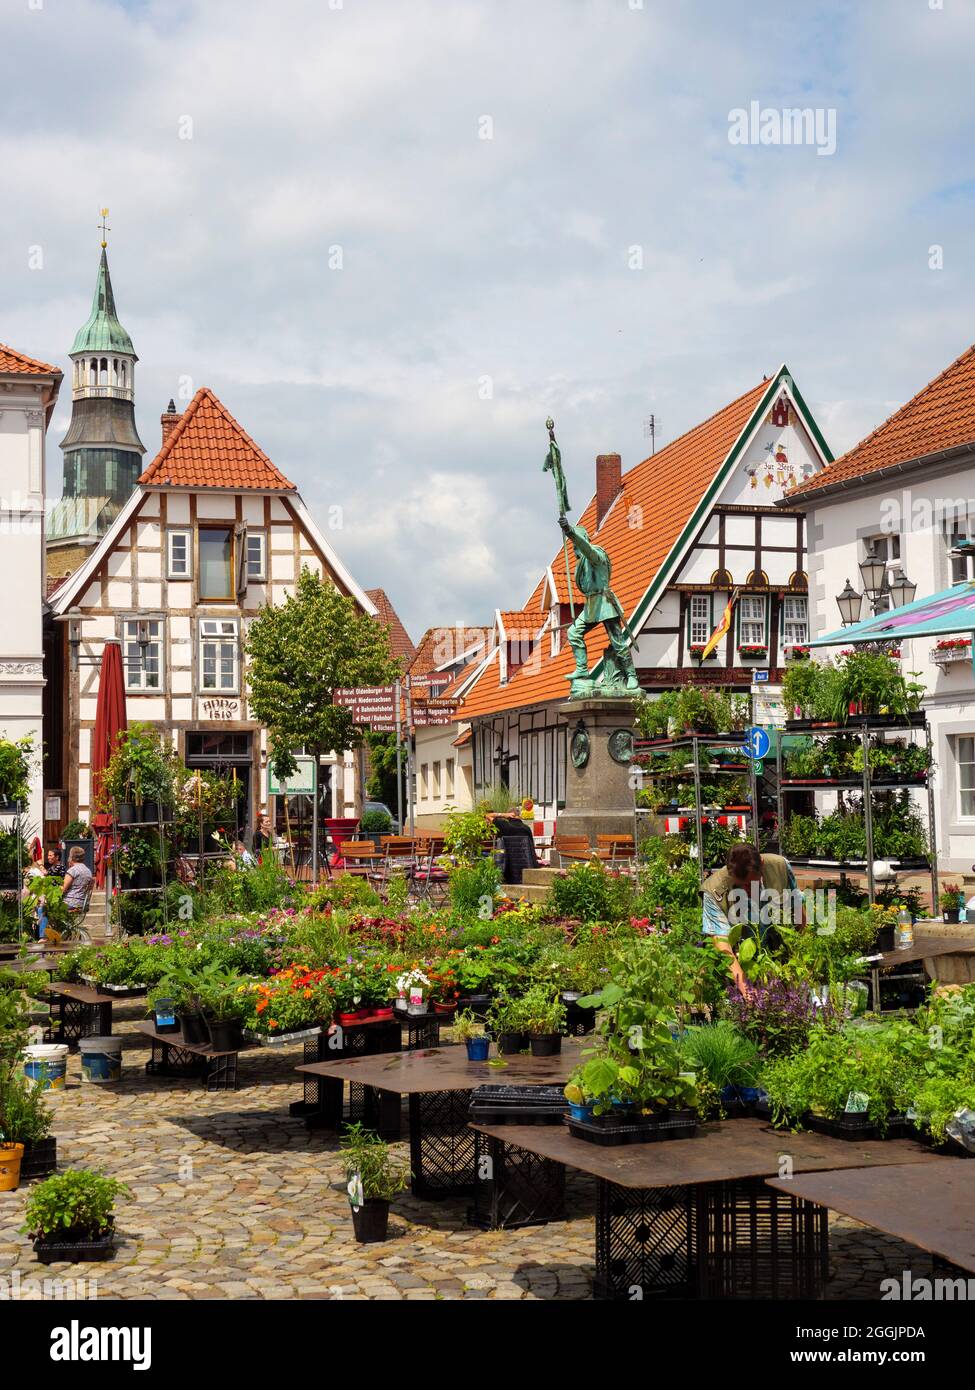 Weekly market, Quakenbrück market square, Osnabrücker Land, Lower Saxony, Germany Stock Photo